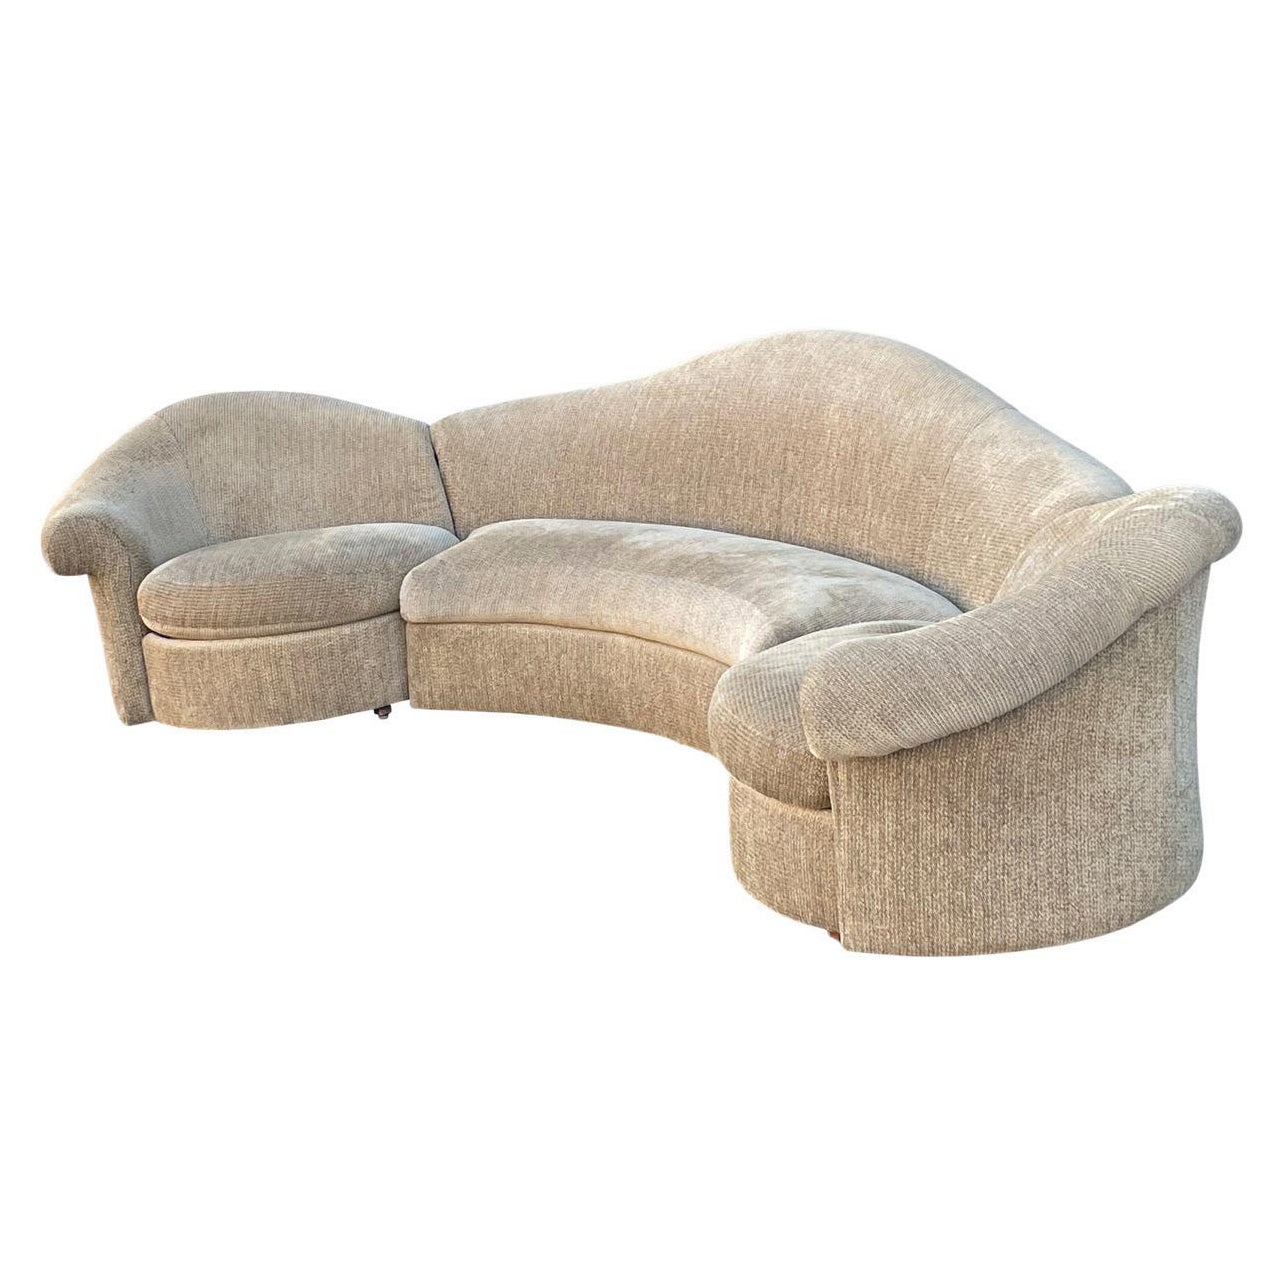 1990s Sculptural Sectional Designer Sofa For Sale